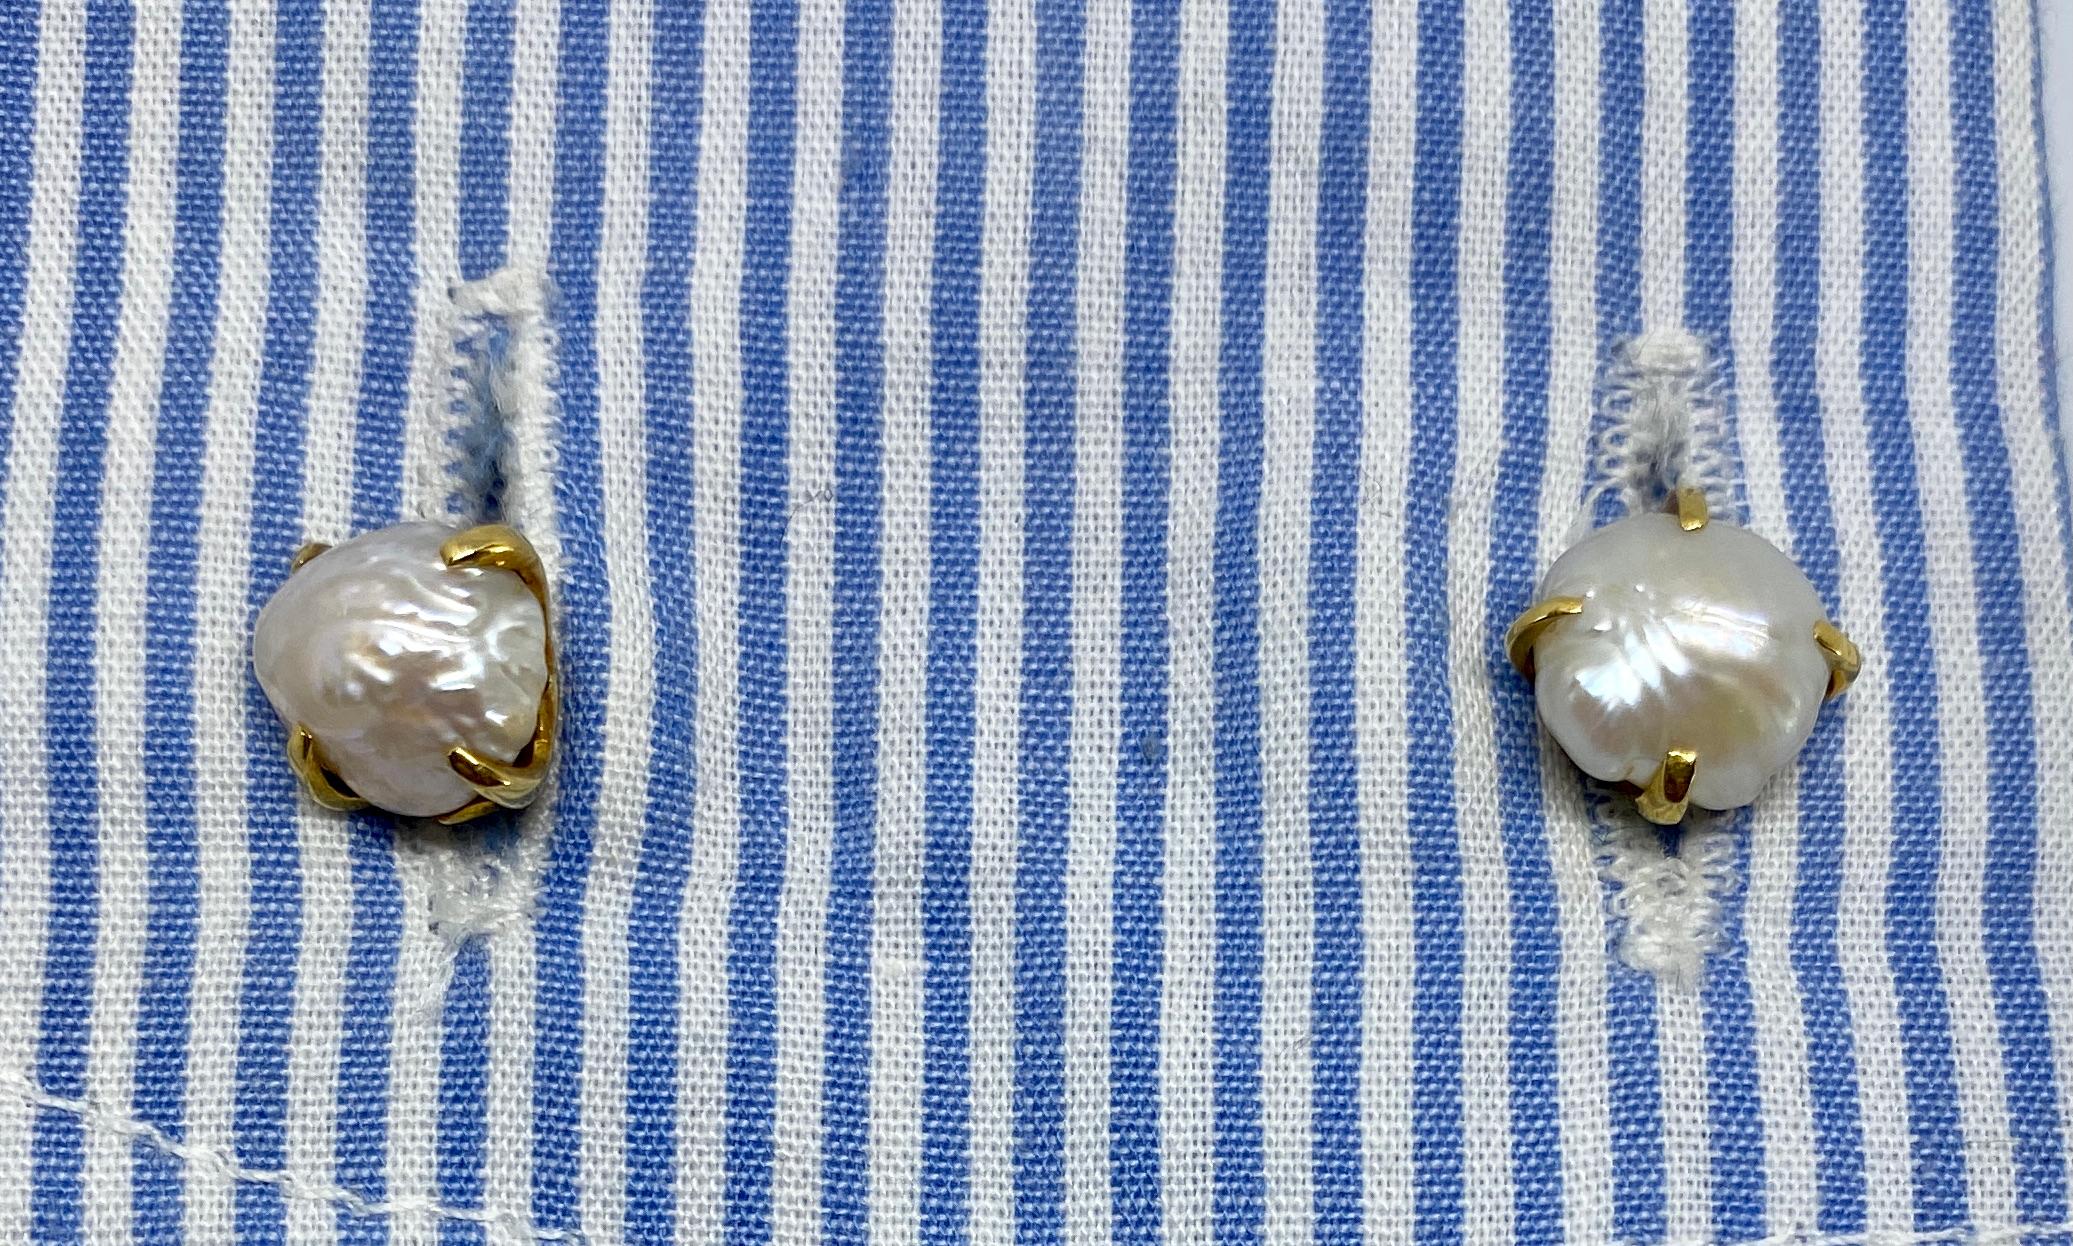 Une paire de boutons de manchette anciens en or jaune par Tiffany & Co, avec quatre perles de rivière naturelles.

Les perles de rivière naturelles sont extrêmement rares et très recherchées par les connaisseurs et les collectionneurs de perles. Ces